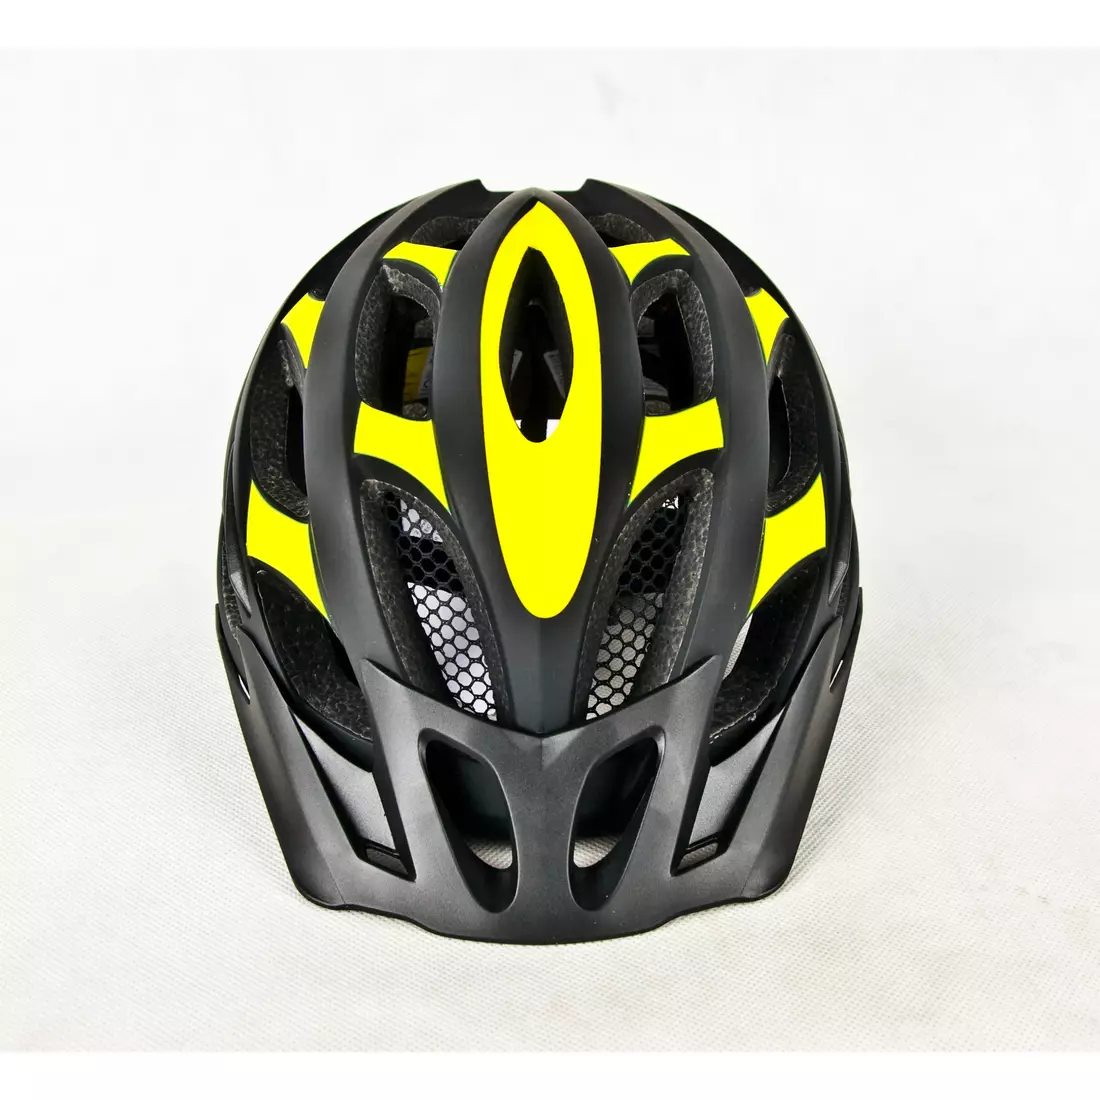 NORTHWAVE RANGER kerékpáros sisak, fekete és sárga